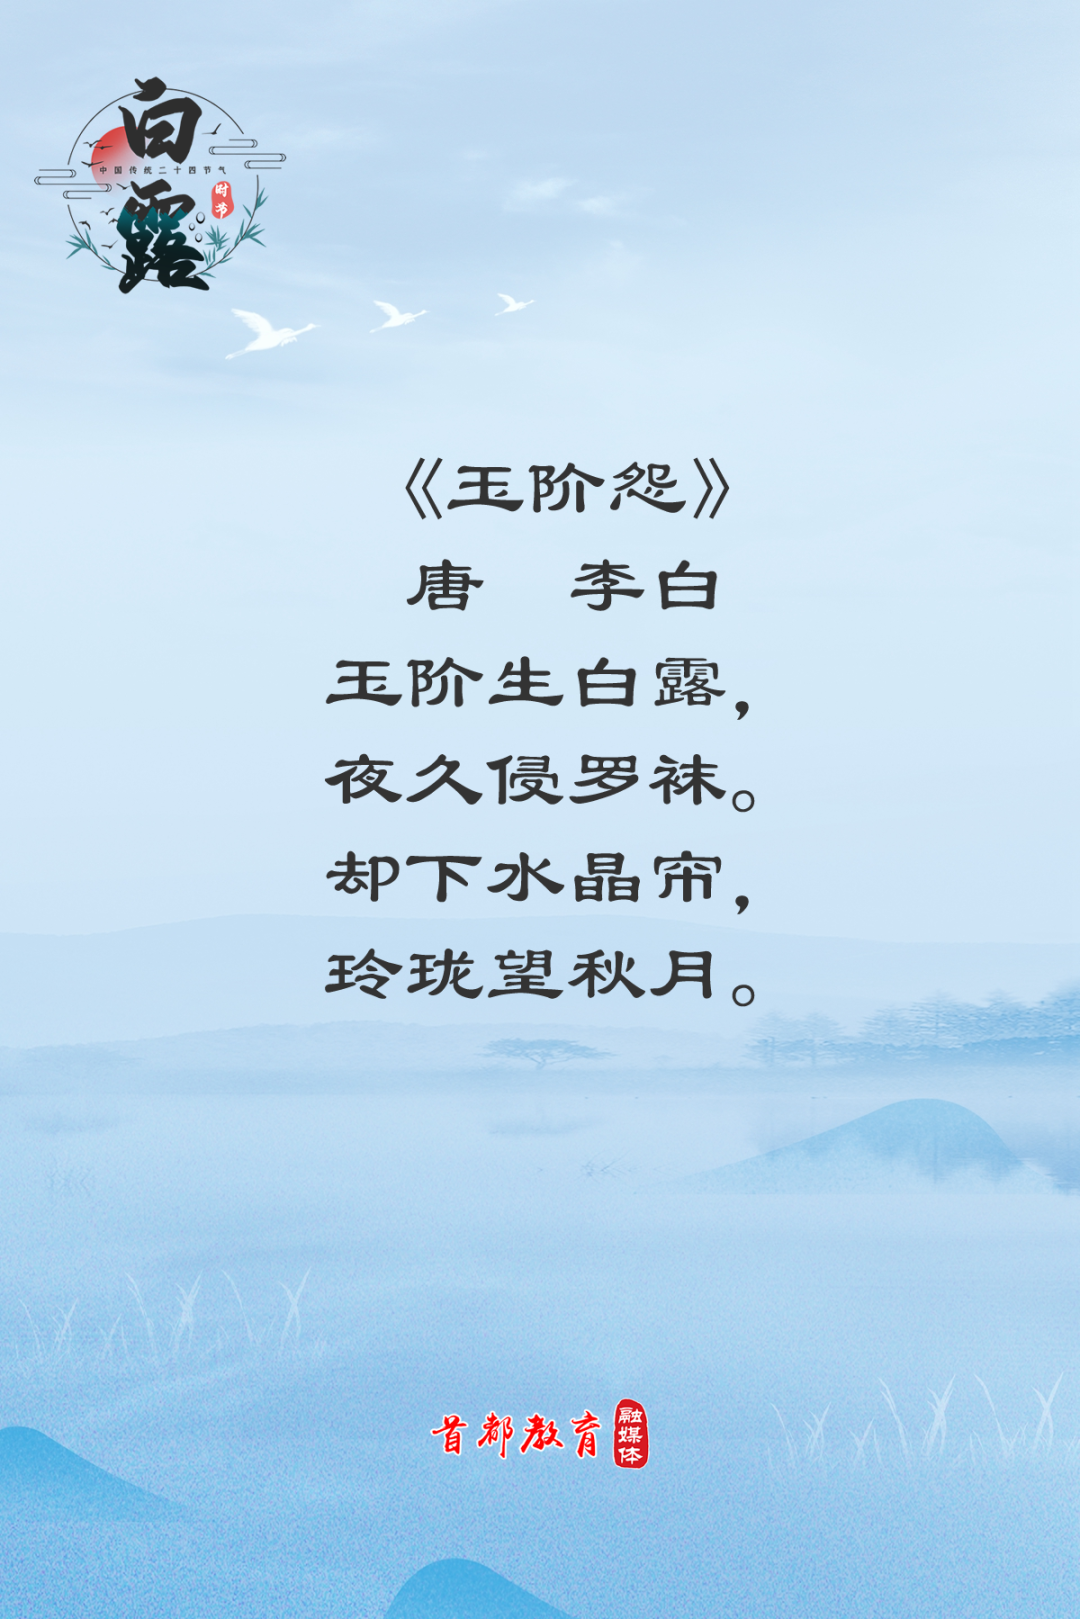 白露时节8首古诗带你品读秋天的诗意